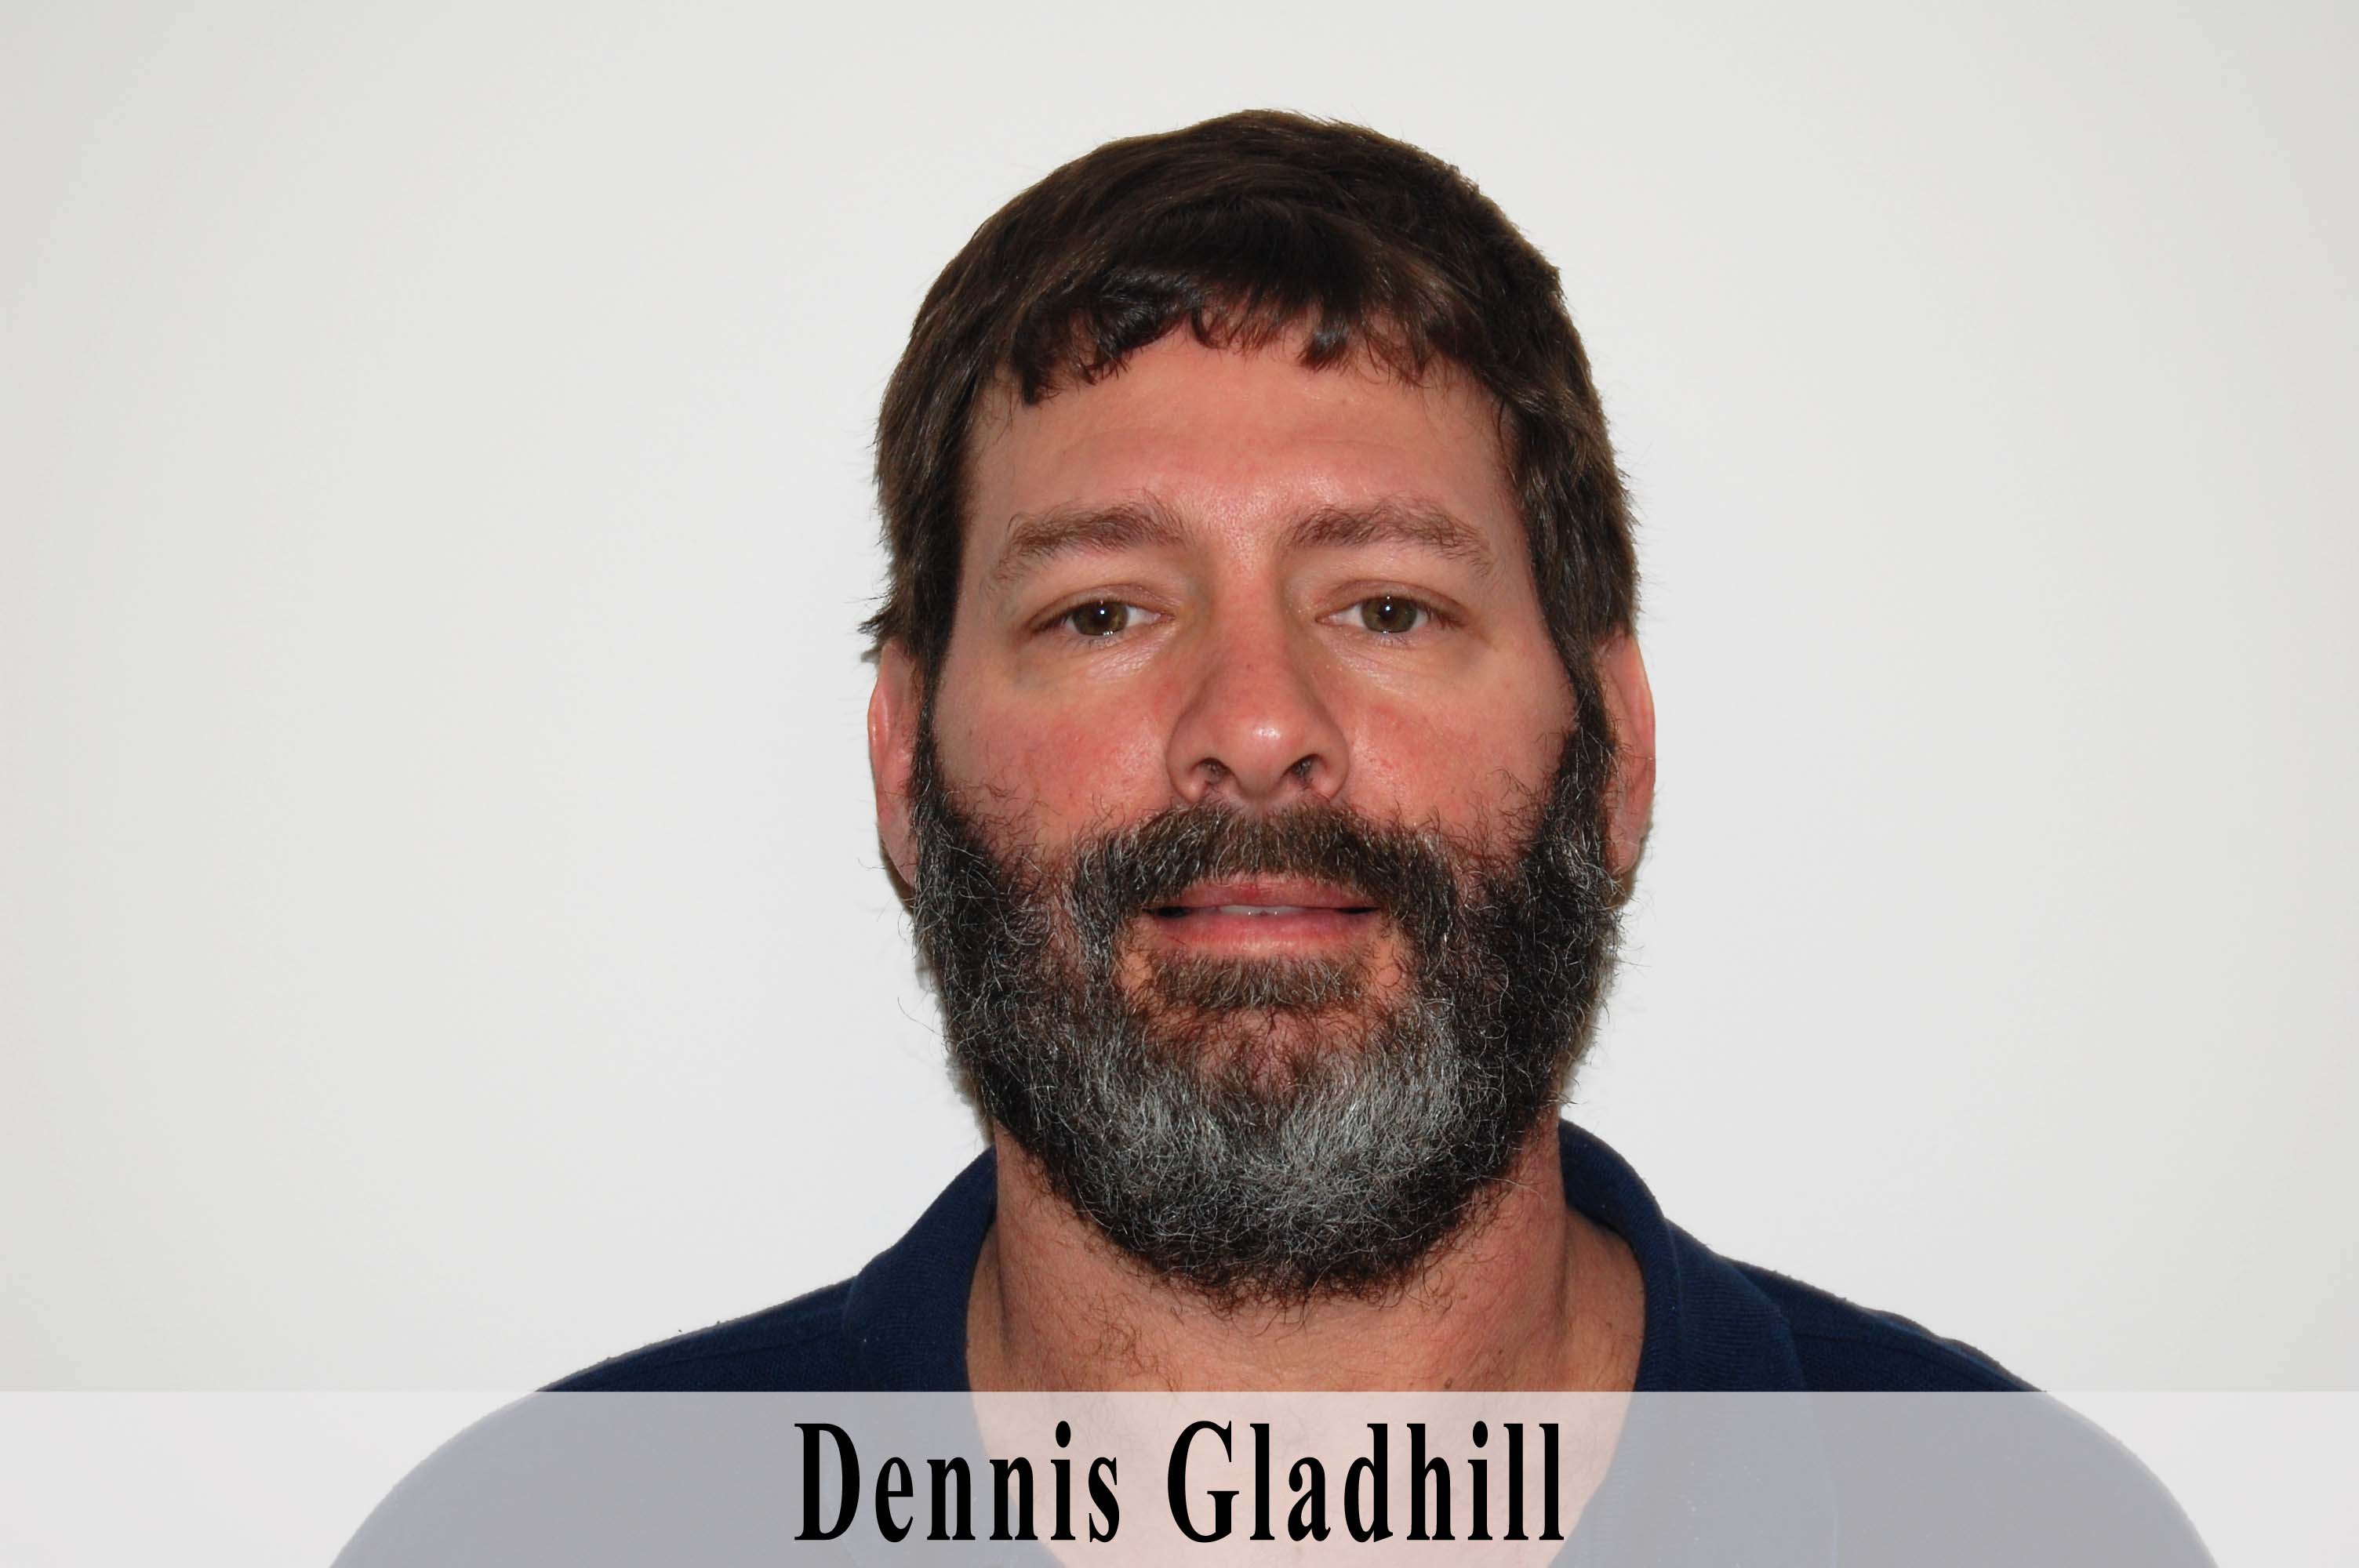 Dennis Gladhill